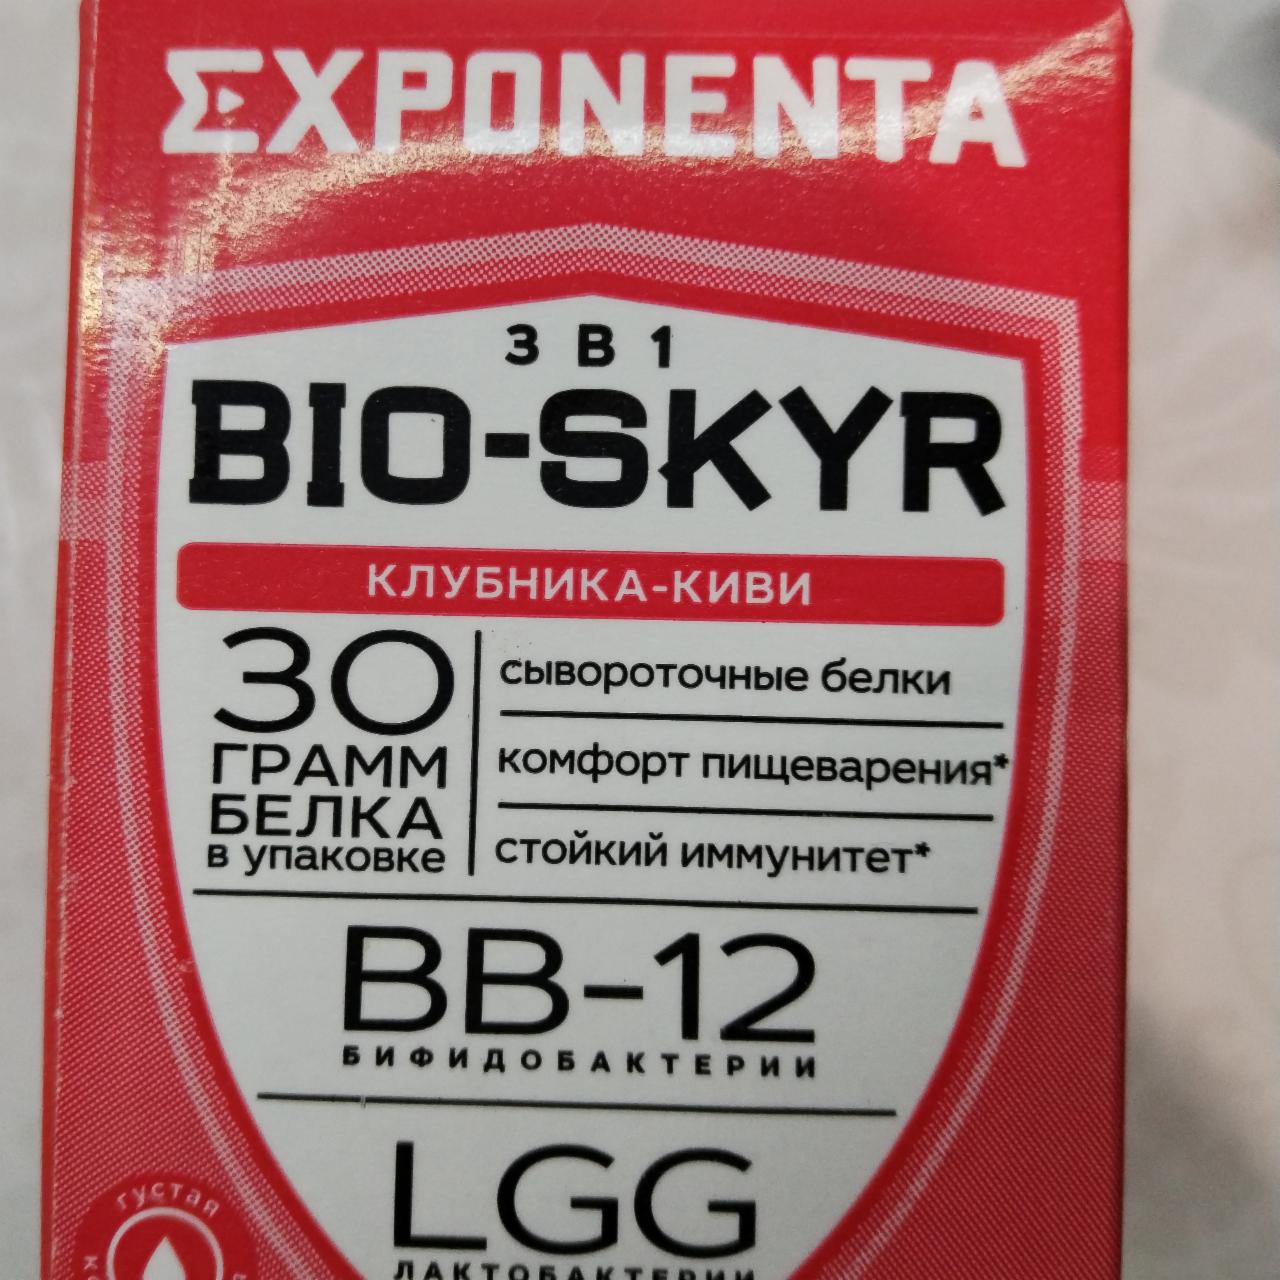 Фото - Экспонента Био-скир 3 в 1 со вкусом клубника-киви Bio-Skyr Exponenta